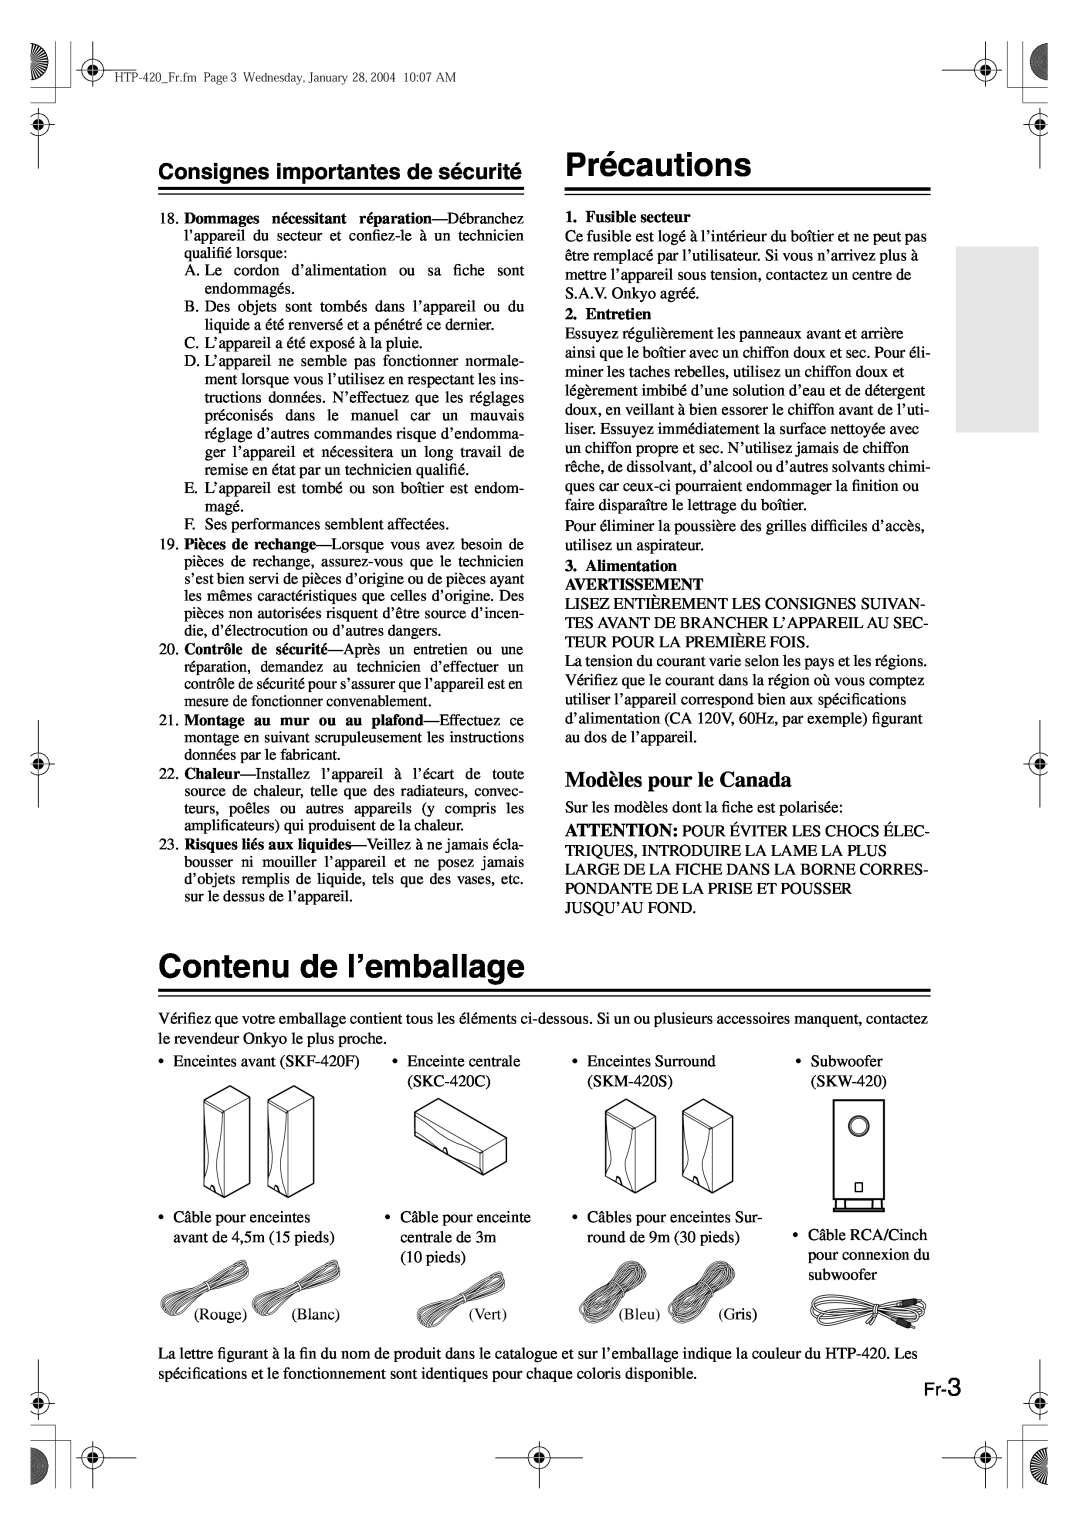 Onkyo HT-R420 manual Précautions, Contenu de l’emballage, Consignes importantes de sécurité, Modèles pour le Canada, Fr-3 